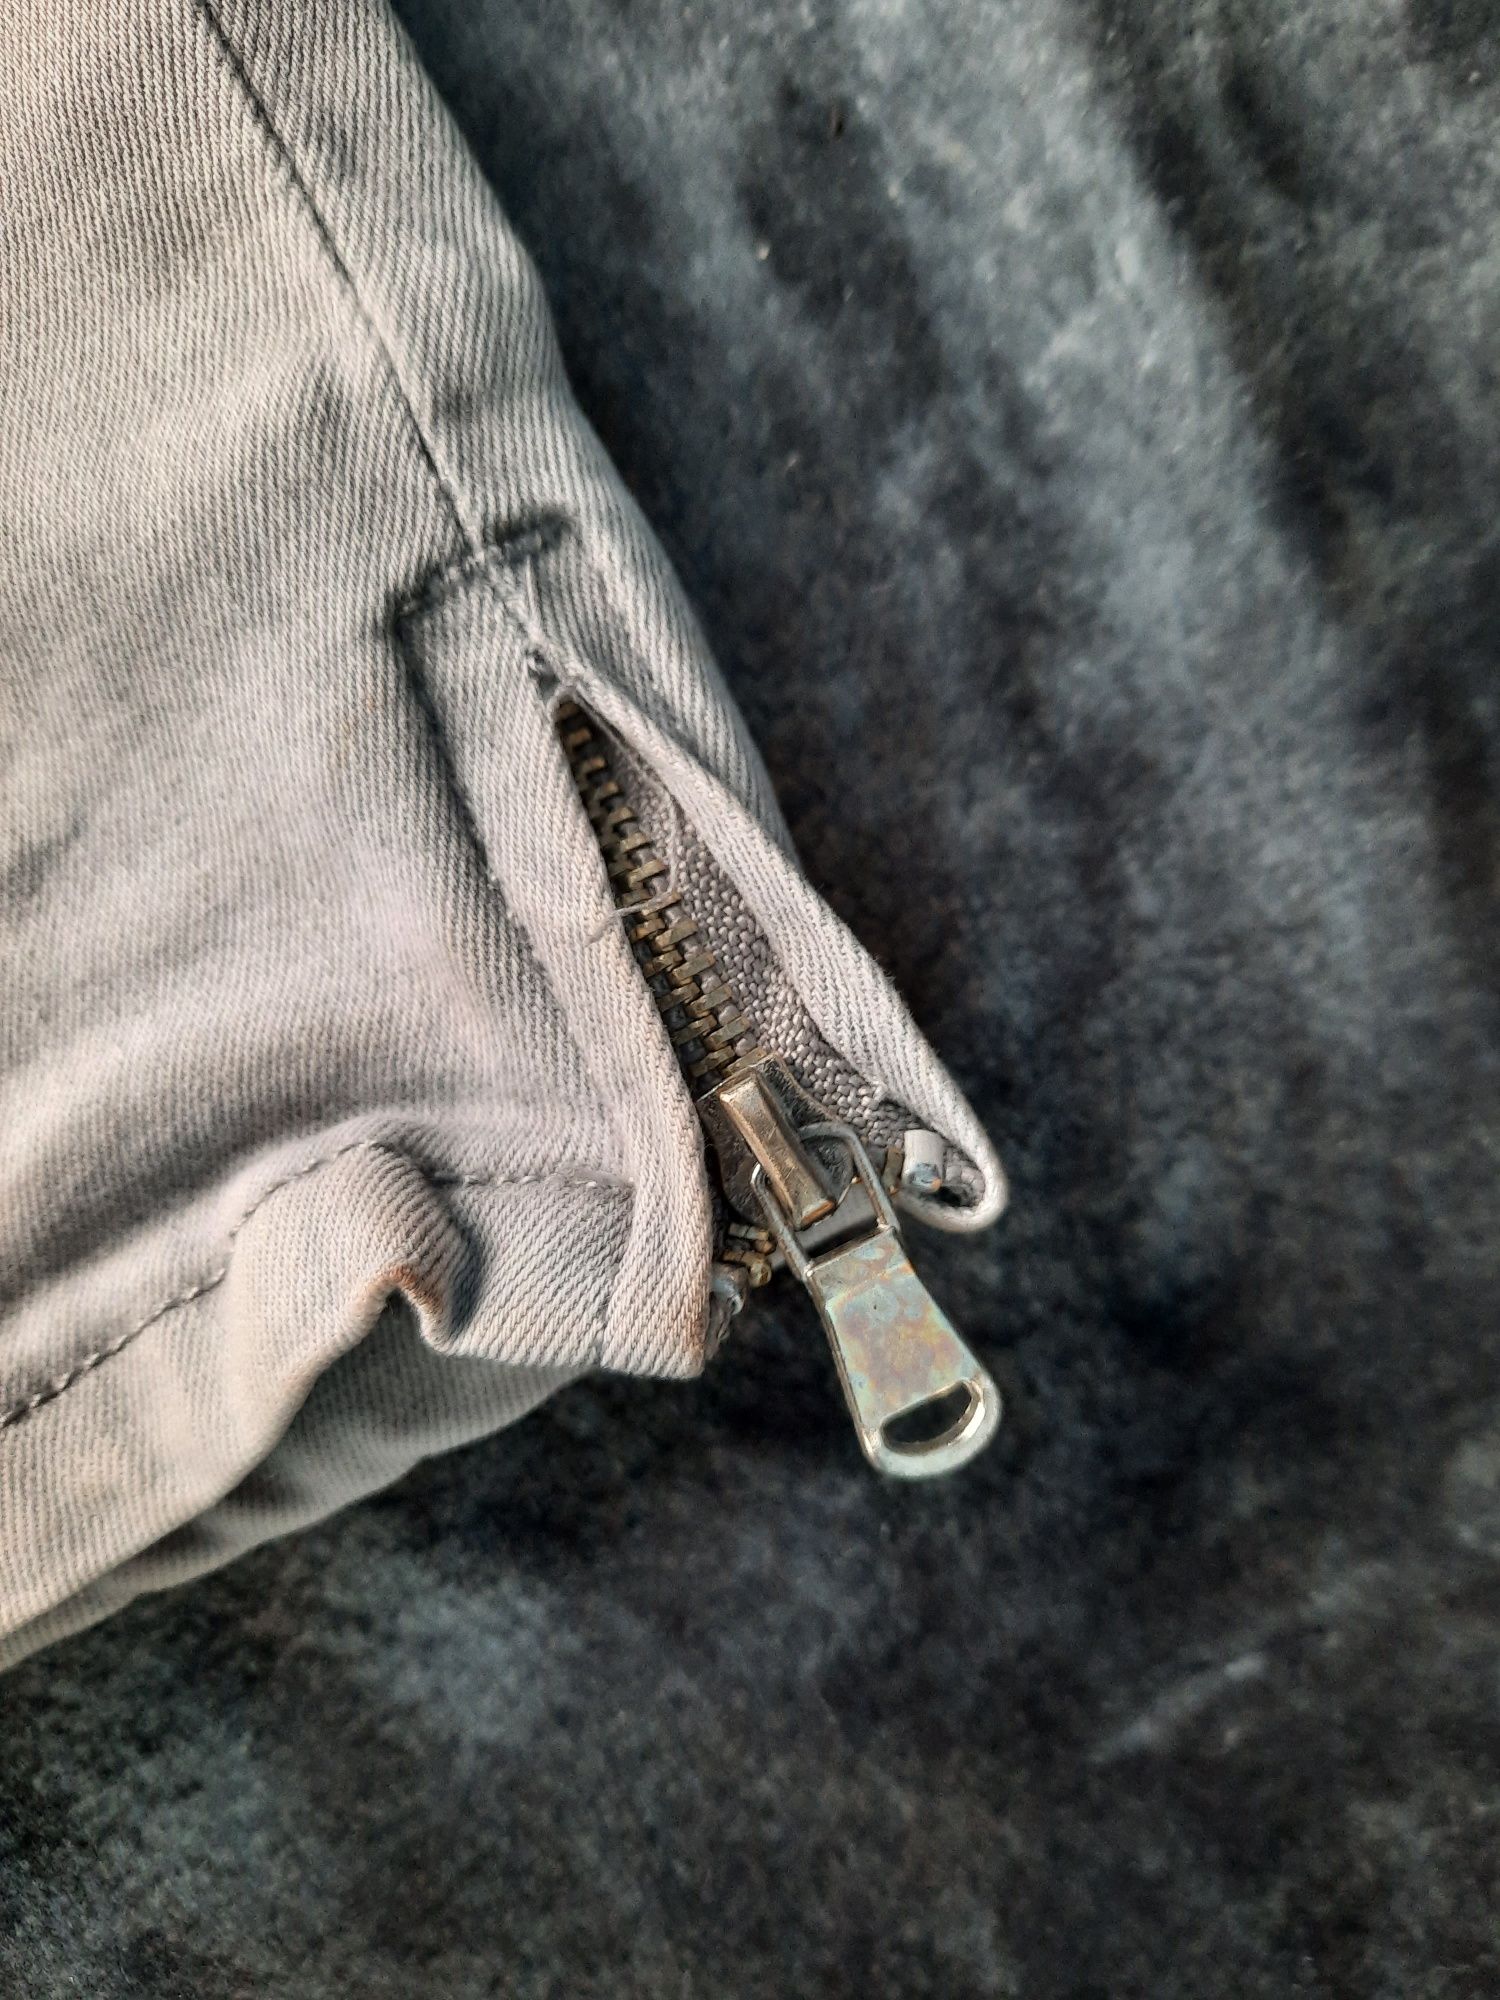 Spodnie damskie marki BSJeans rozmiar S